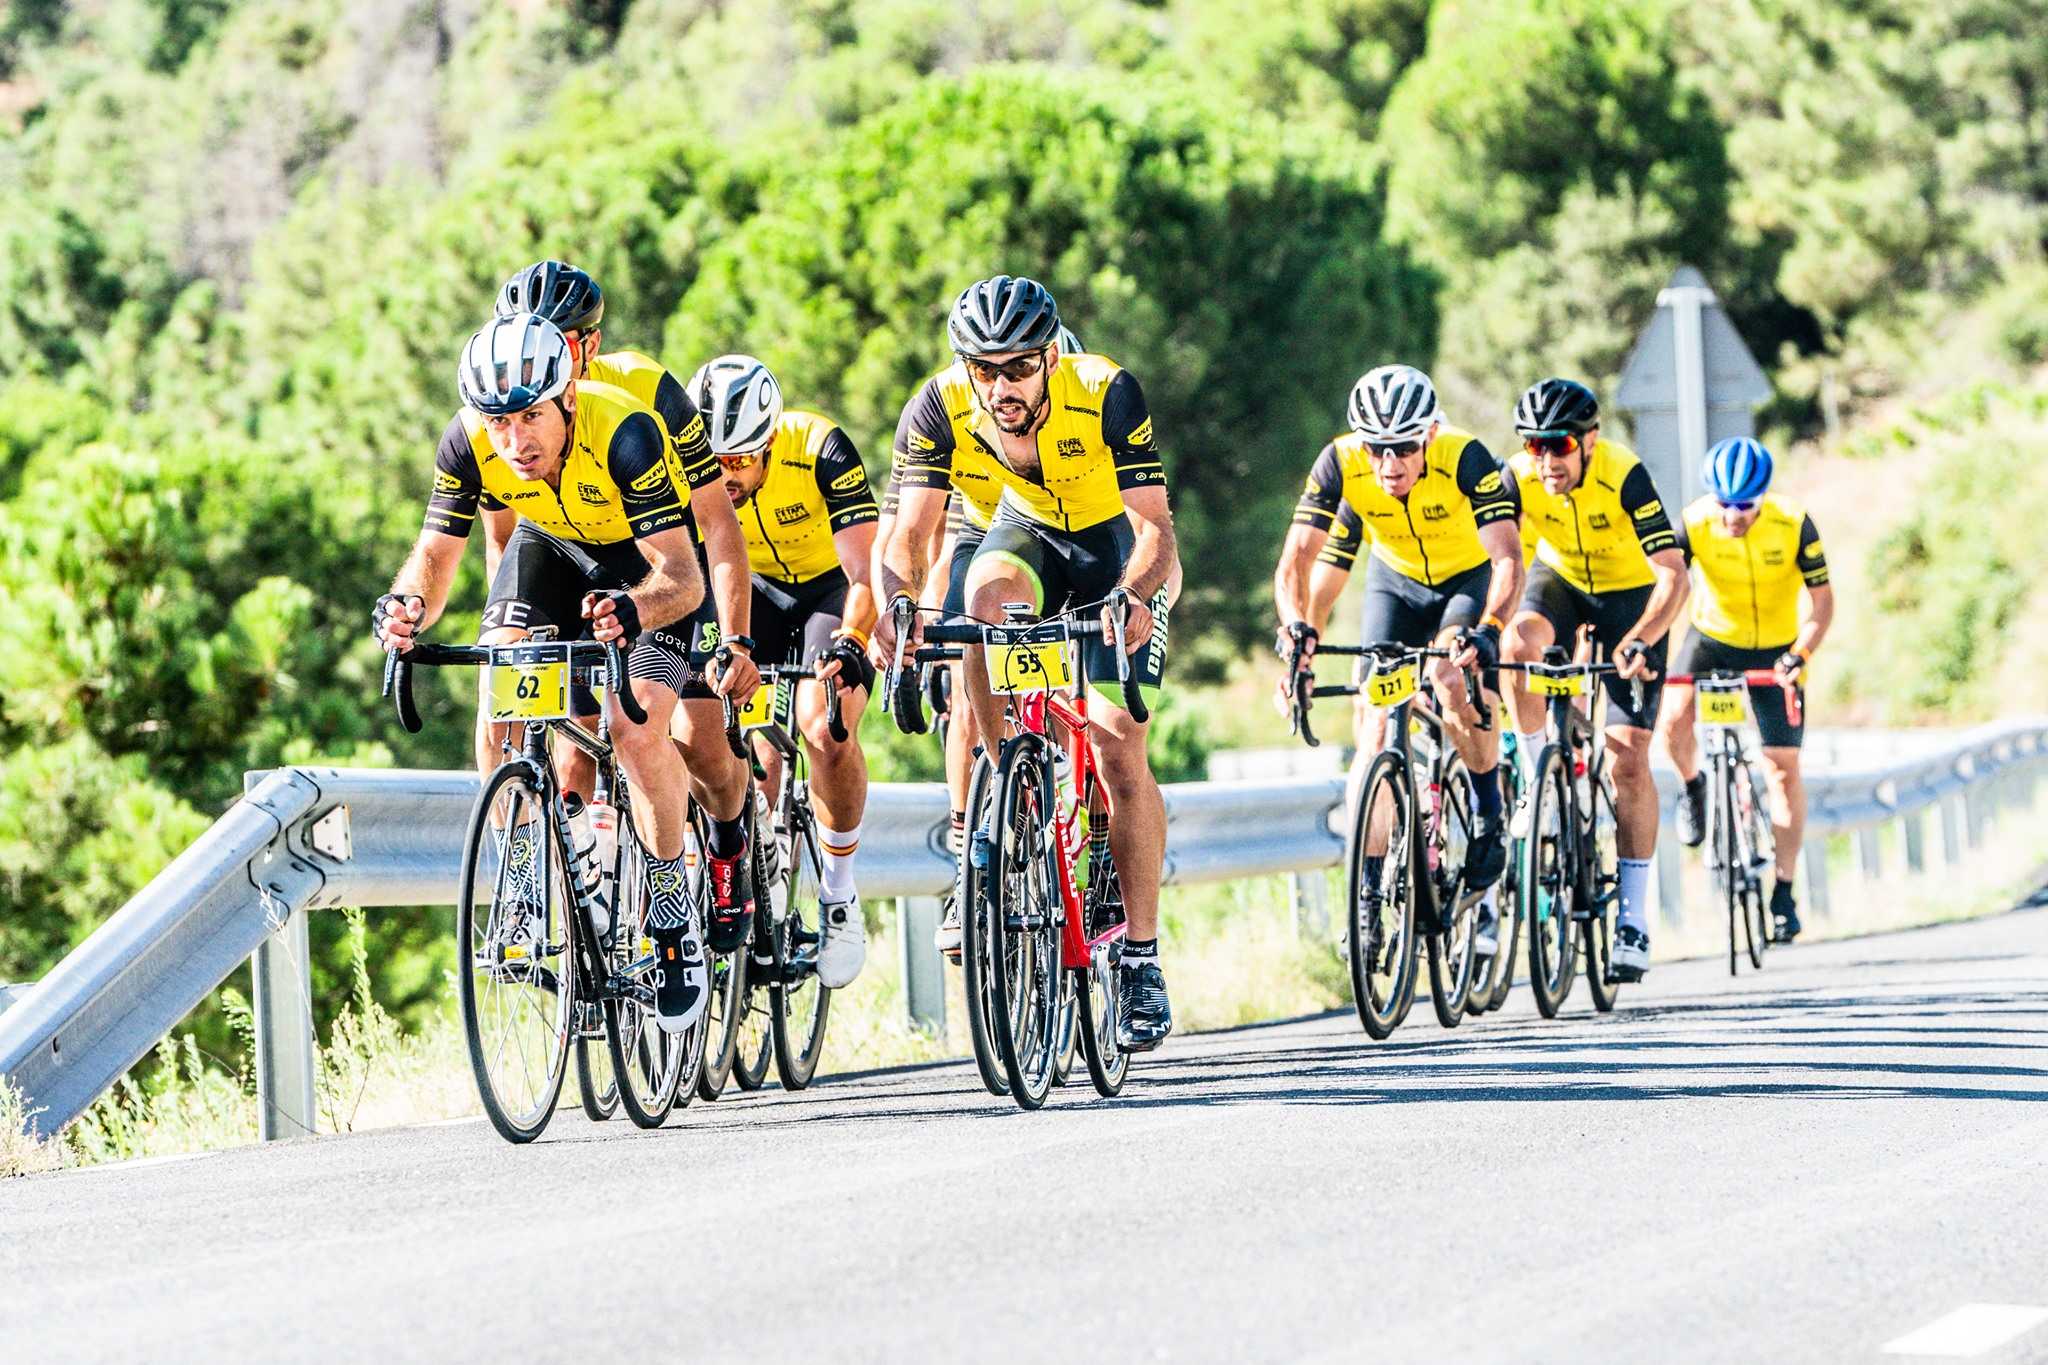 Celebrada con éxito en Villanueva del Pardillo L´Étape Madrid by Tour de France